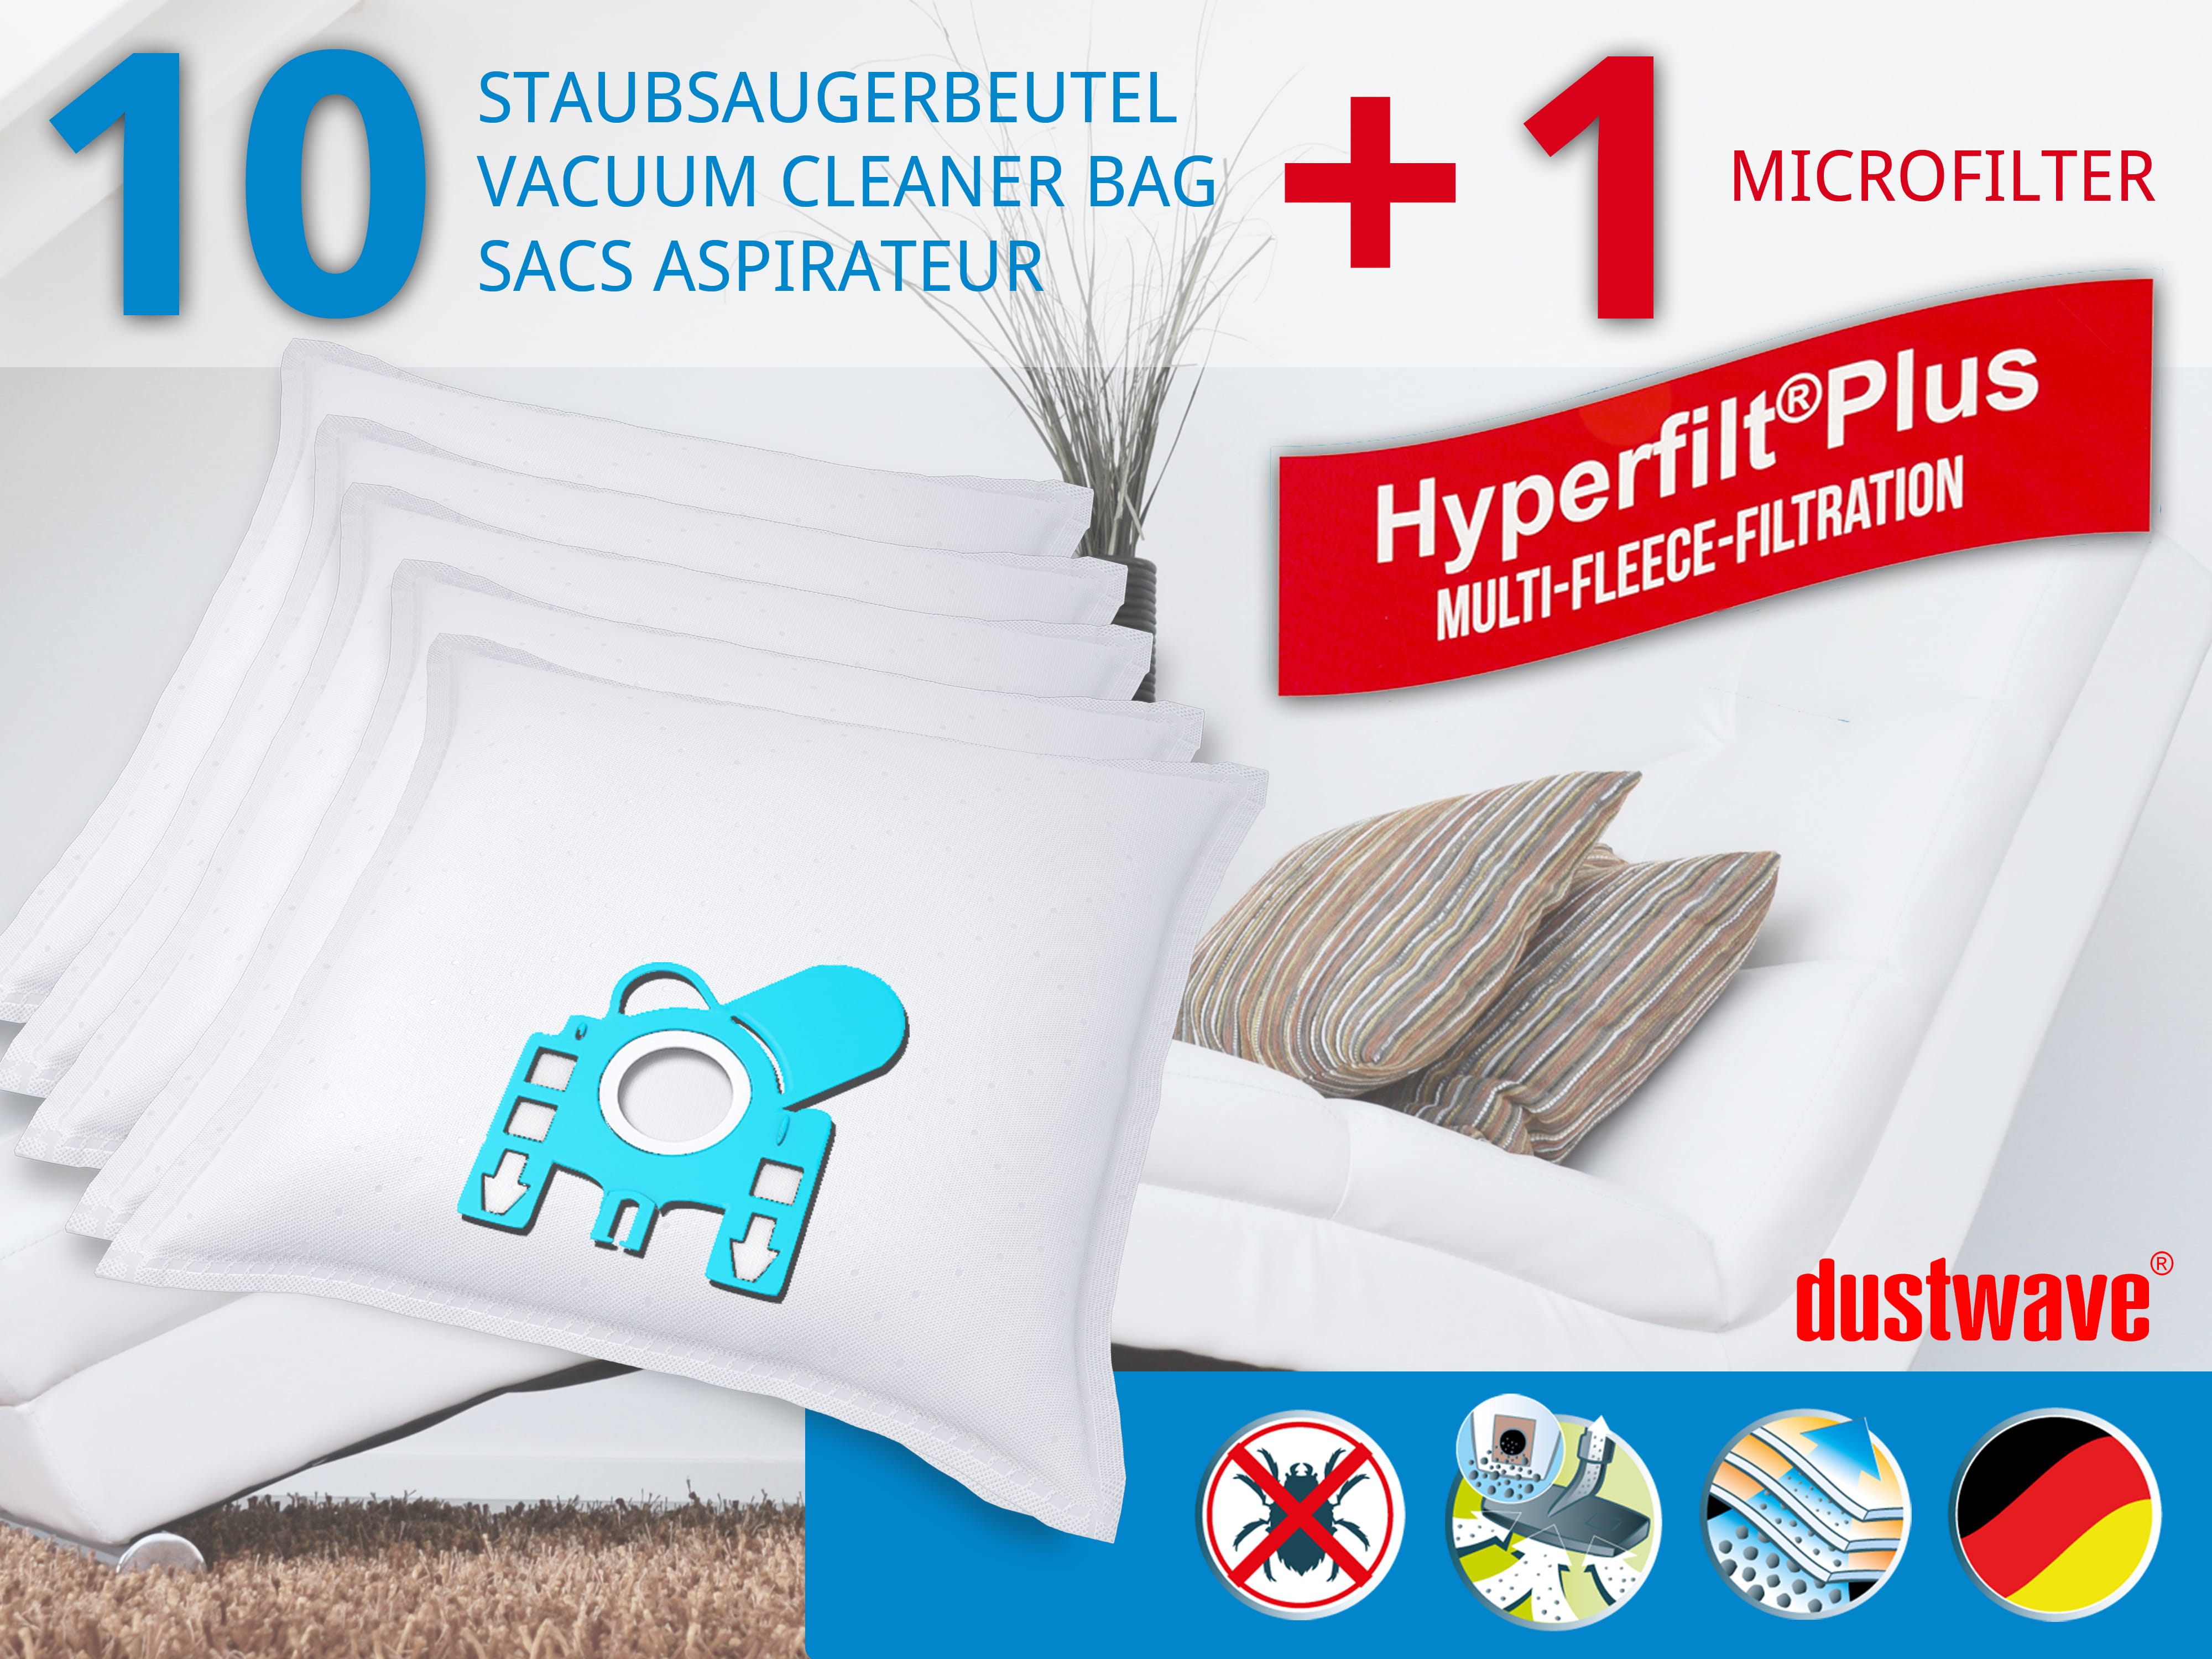 Dustwave® 10 Staubsaugerbeutel für Hoover ATC18SE 011 - hocheffizient, mehrlagiges Mikrovlies mit Hygieneverschluss - Made in Germany